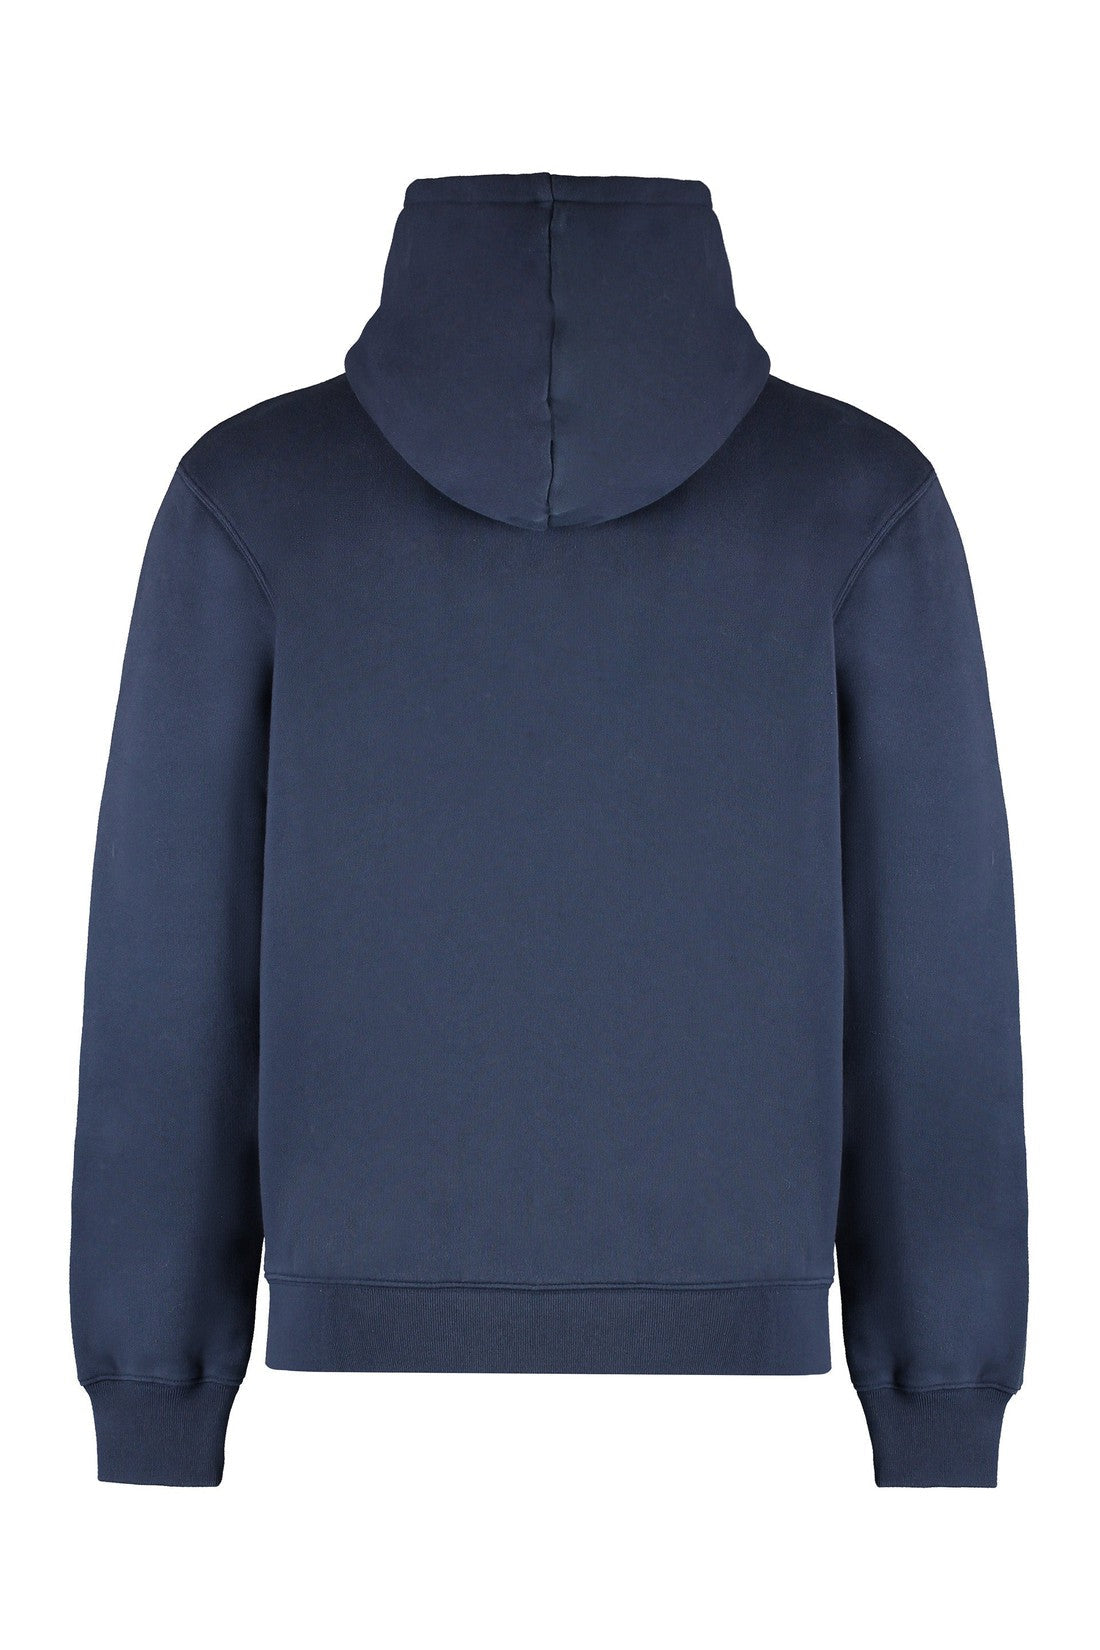 Maison Kitsuné-OUTLET-SALE-Full zip hoodie-ARCHIVIST